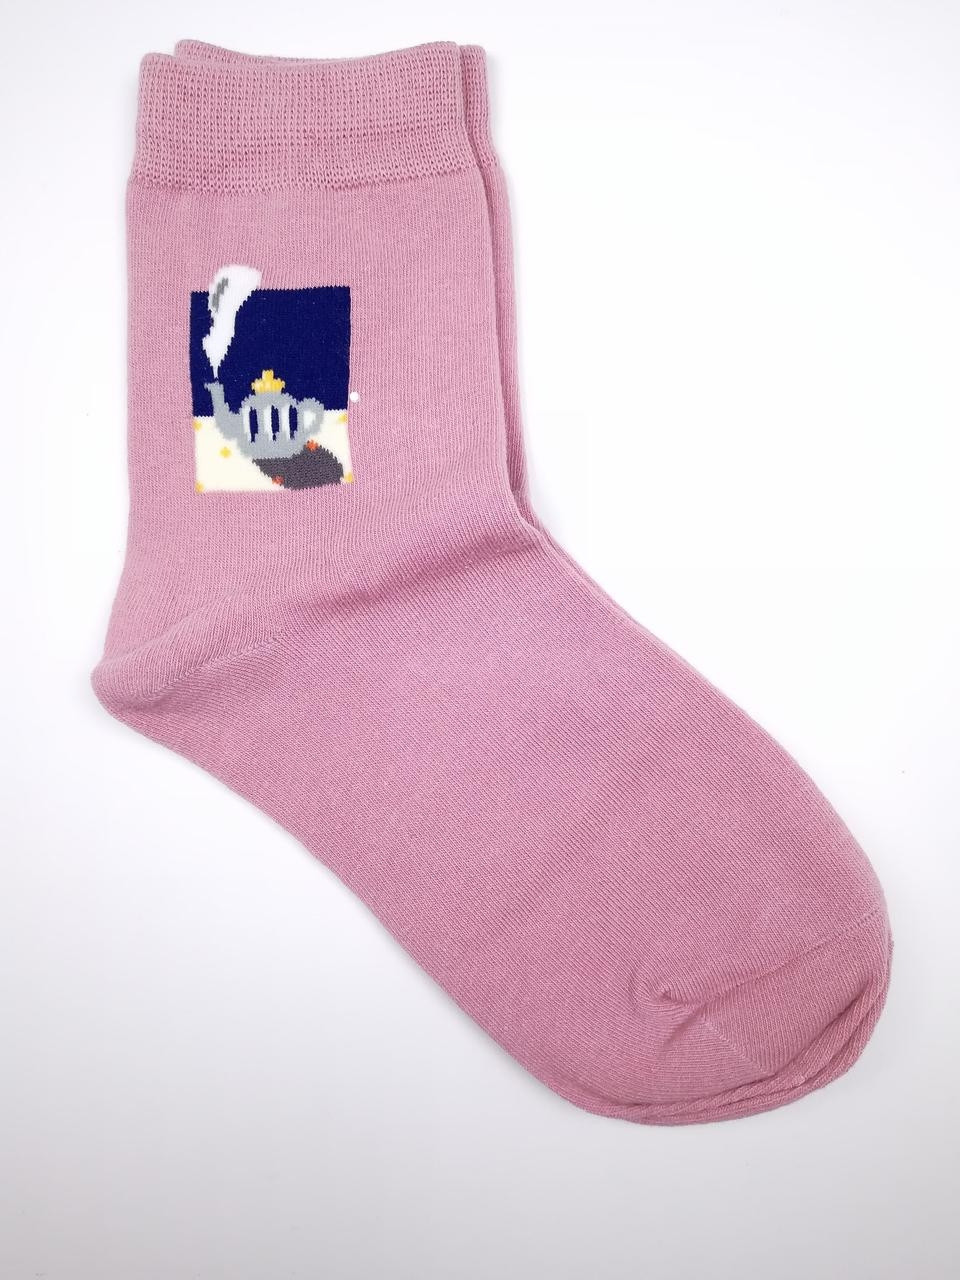 Жіночі прикольні шкарпетки кольору пудра з принтом "Чайник"